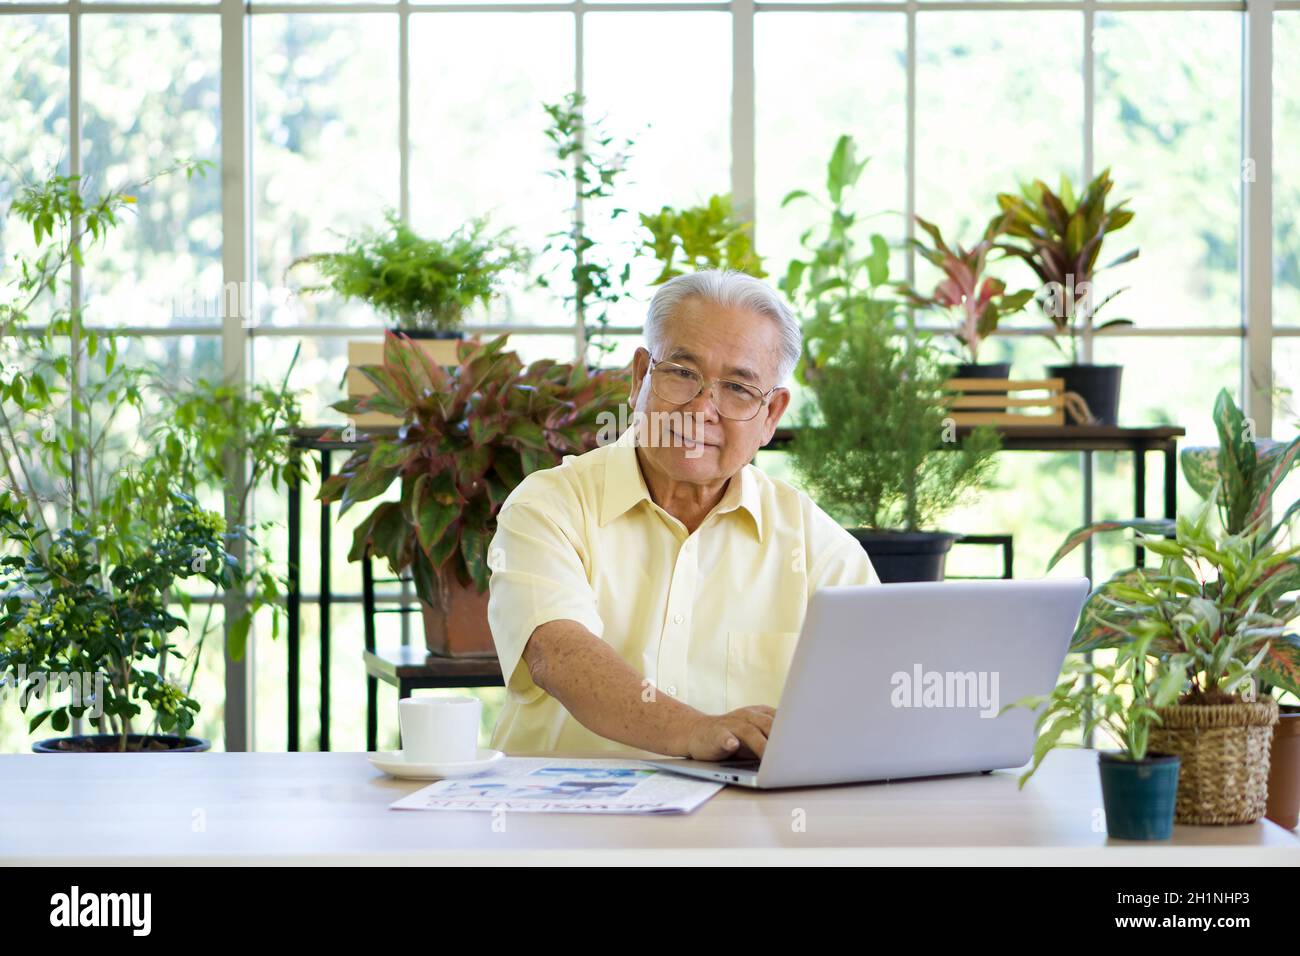 El abuelo jubilado utilizó una computadora para buscar información en Internet después de leer el periódico. La atmósfera matutina en la planta de invernadero Foto de stock